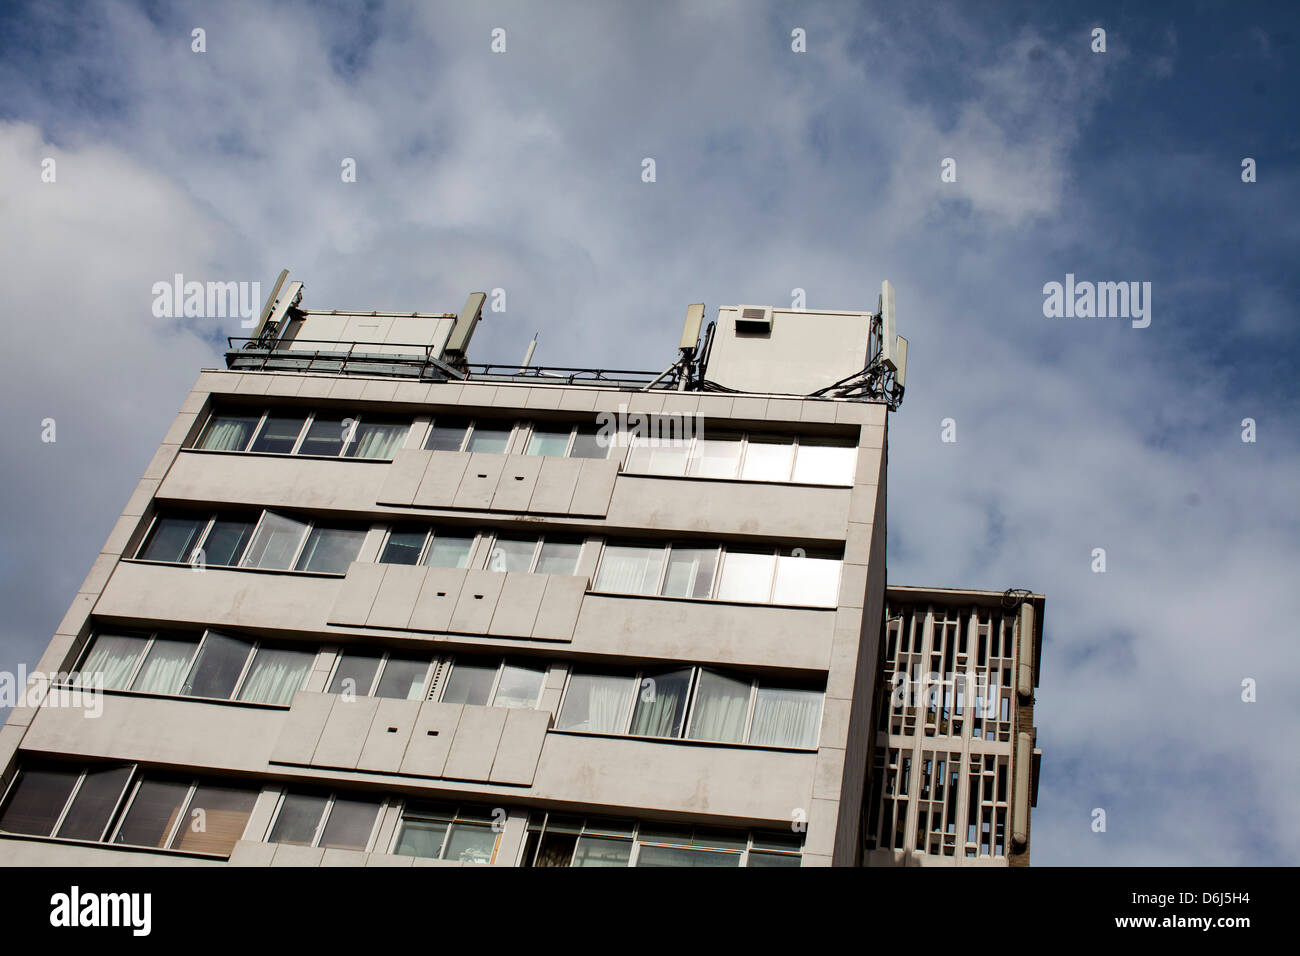 Mâts de téléphonie mobile sur un immeuble de bureaux à Londres, Angleterre contre un ciel nuageux. Banque D'Images